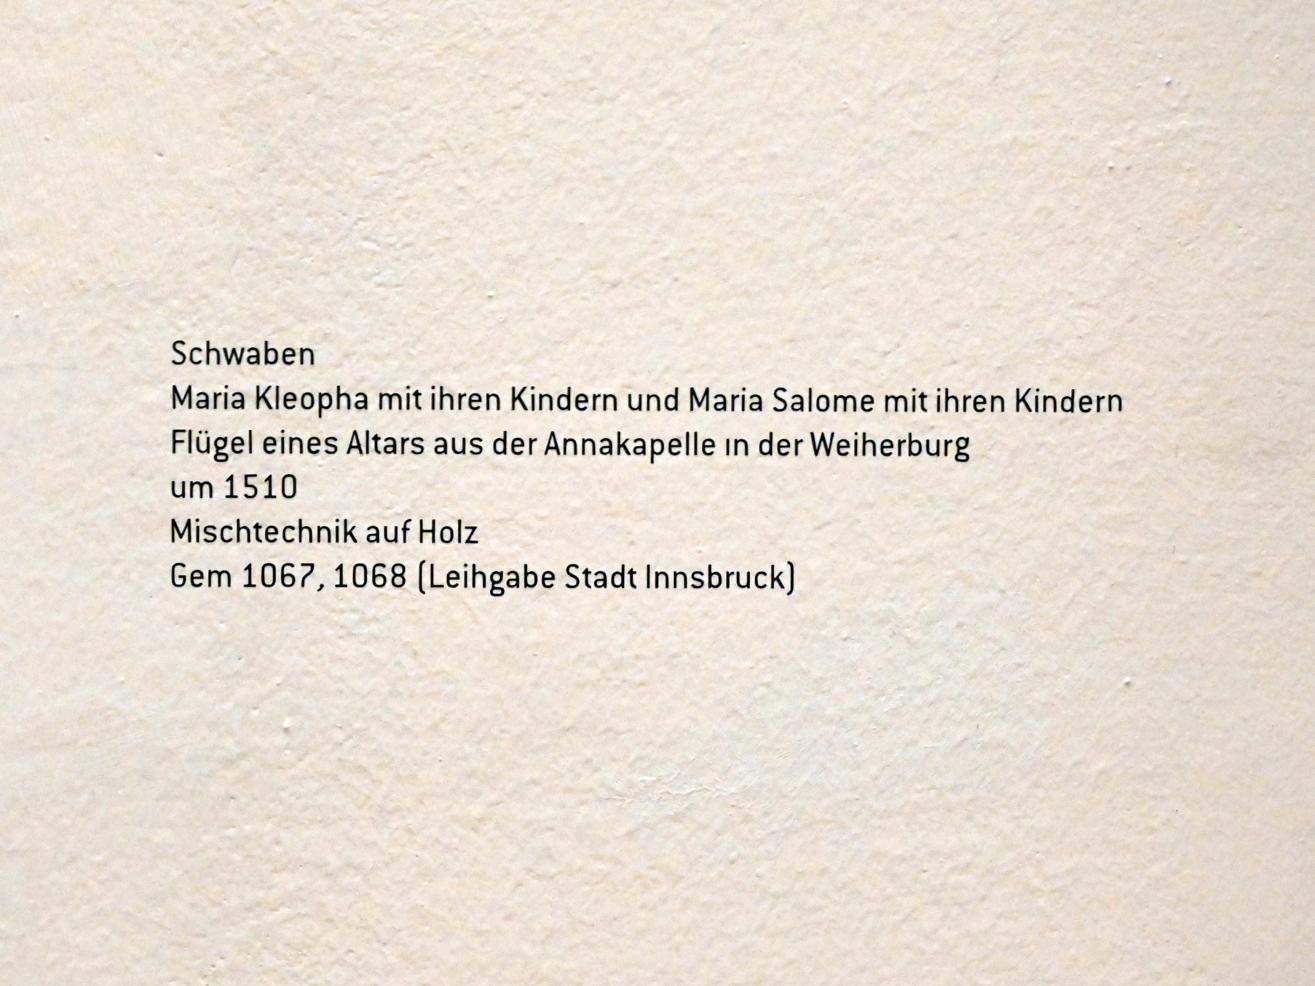 Maria Kleopha mit ihren Kindern und Maria Salome mit ihren Kindern, Innsbruck, Schloss Weiherburg, jetzt Innsbruck, Tiroler Landesmuseum, Ferdinandeum, Saal 11, um 1510, Bild 2/2